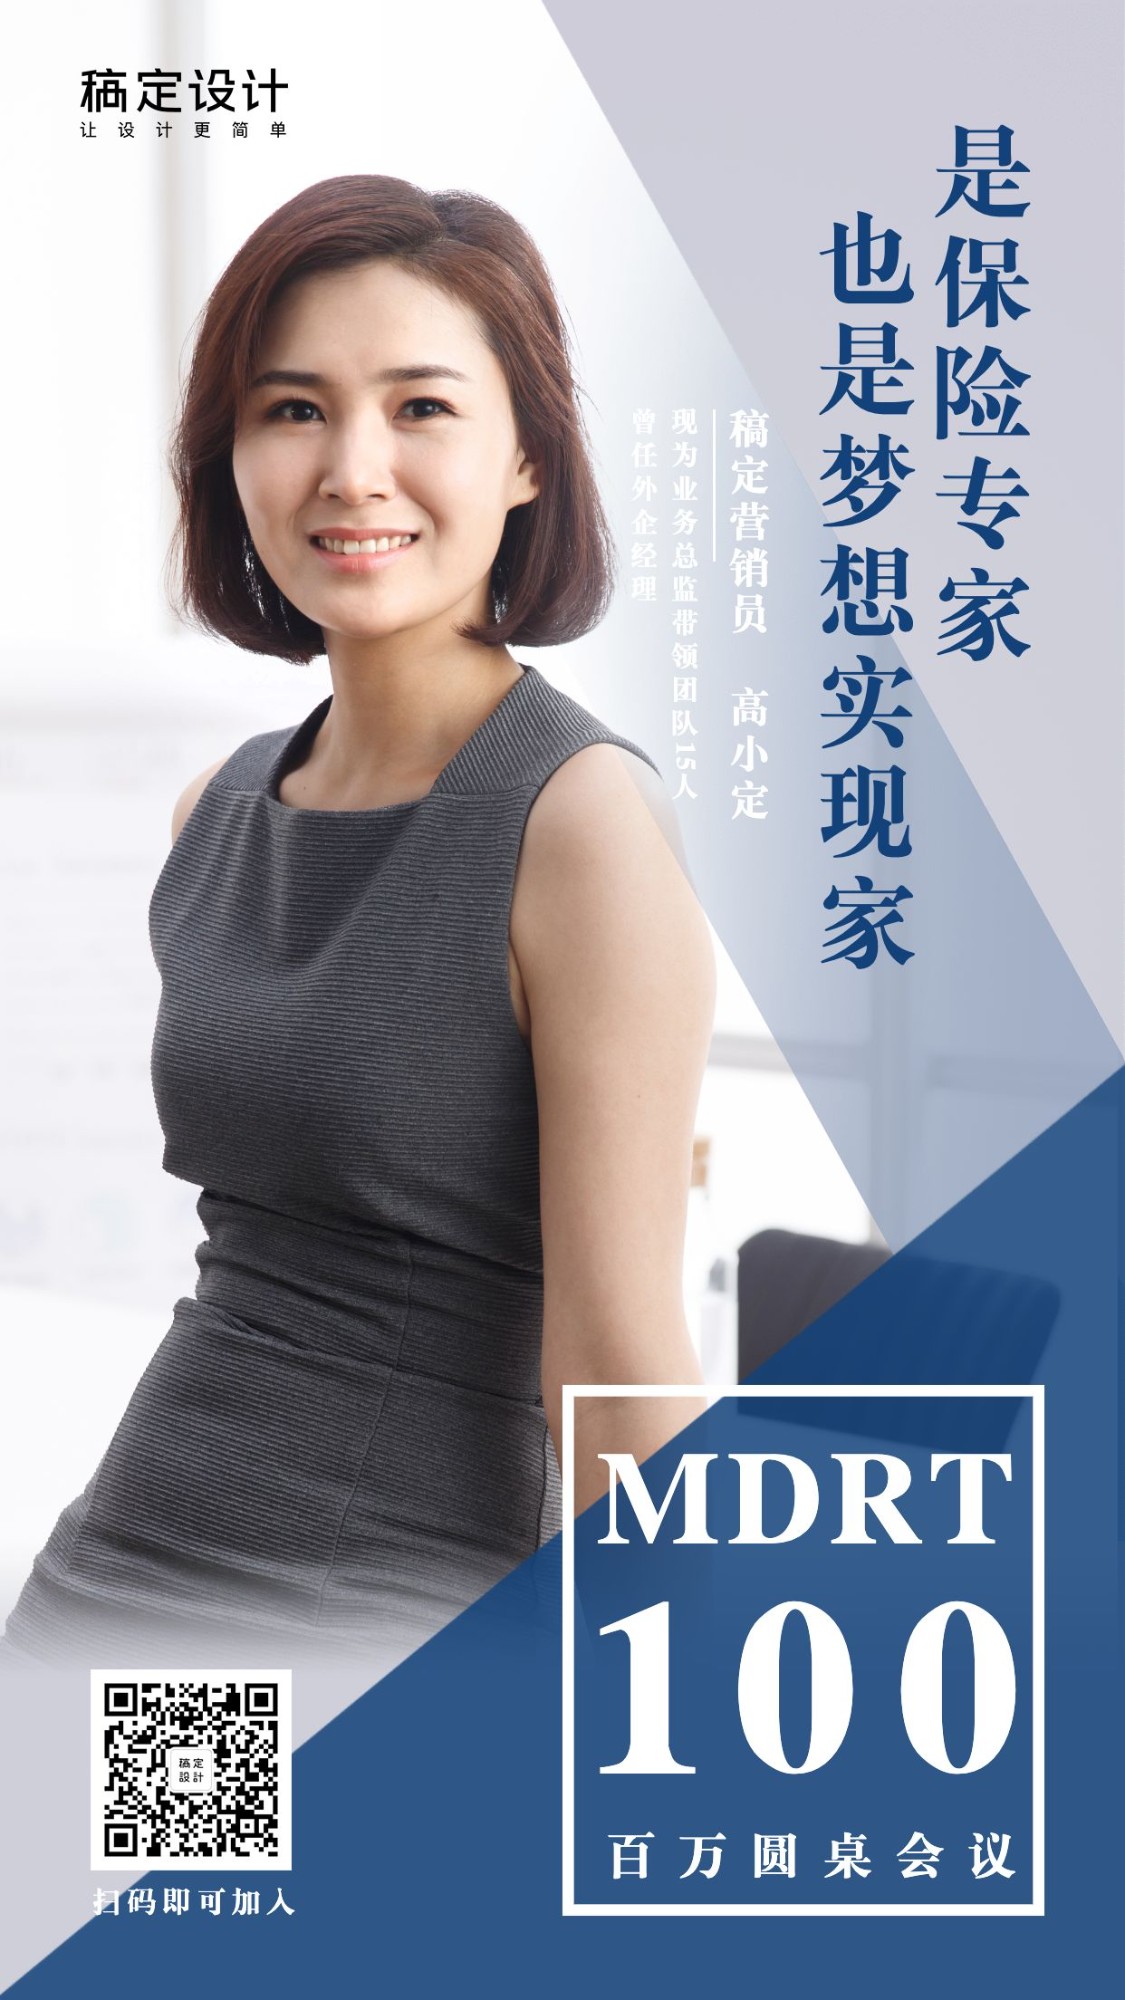 金融保险个人营销MDRT社交名片